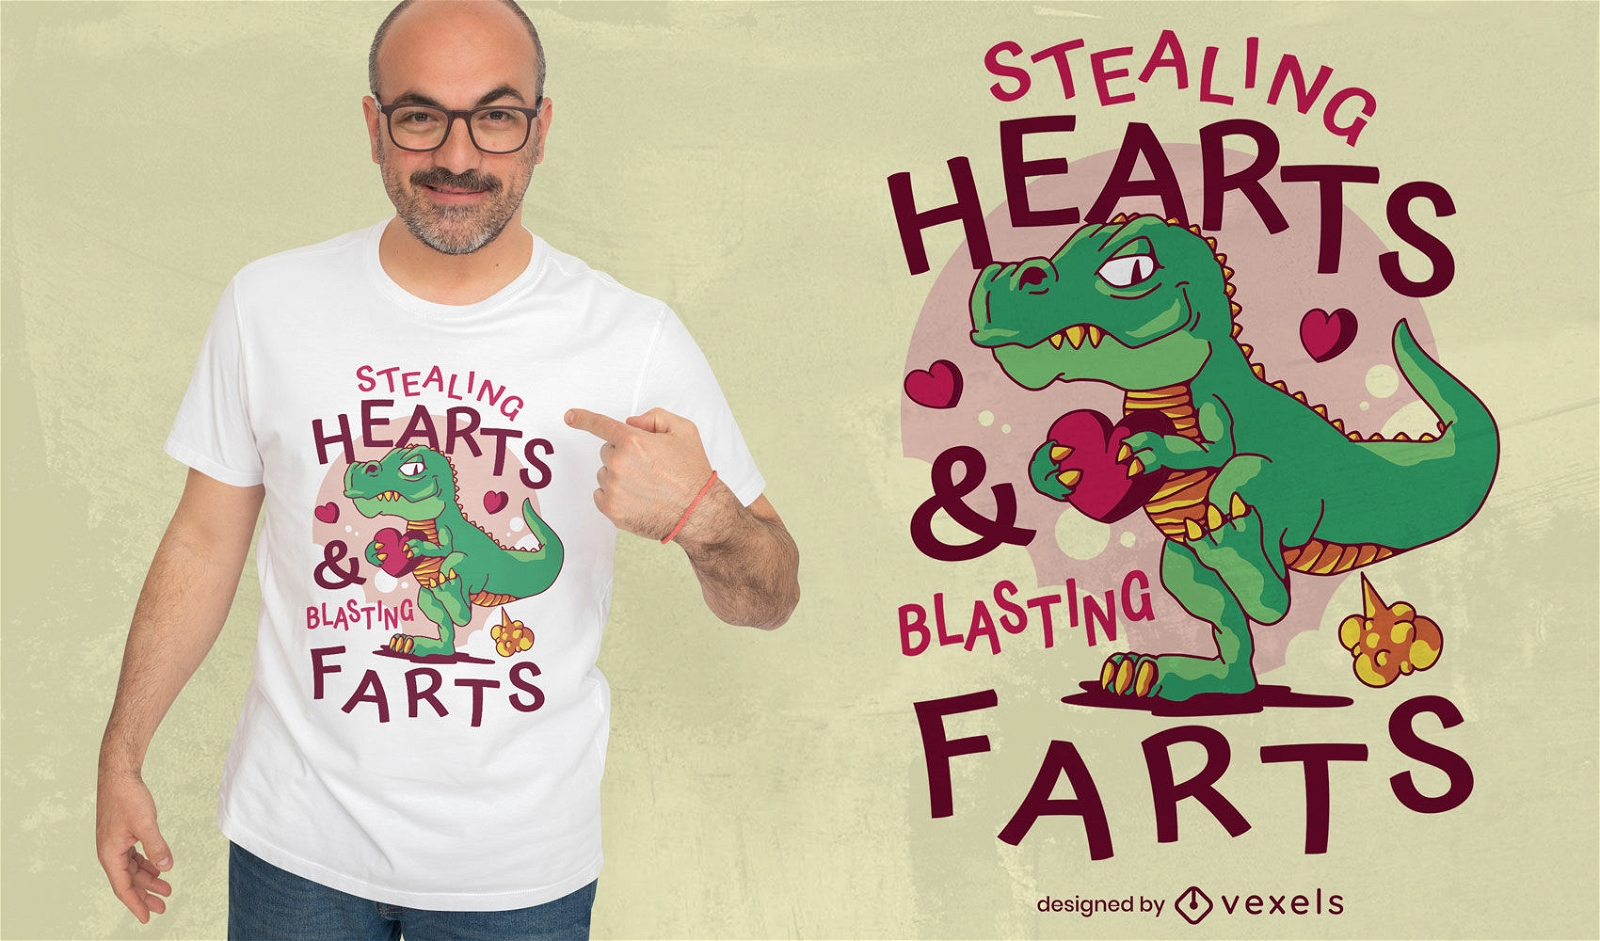 Stealing hearts t-rex Valentine's Day t-shirt design